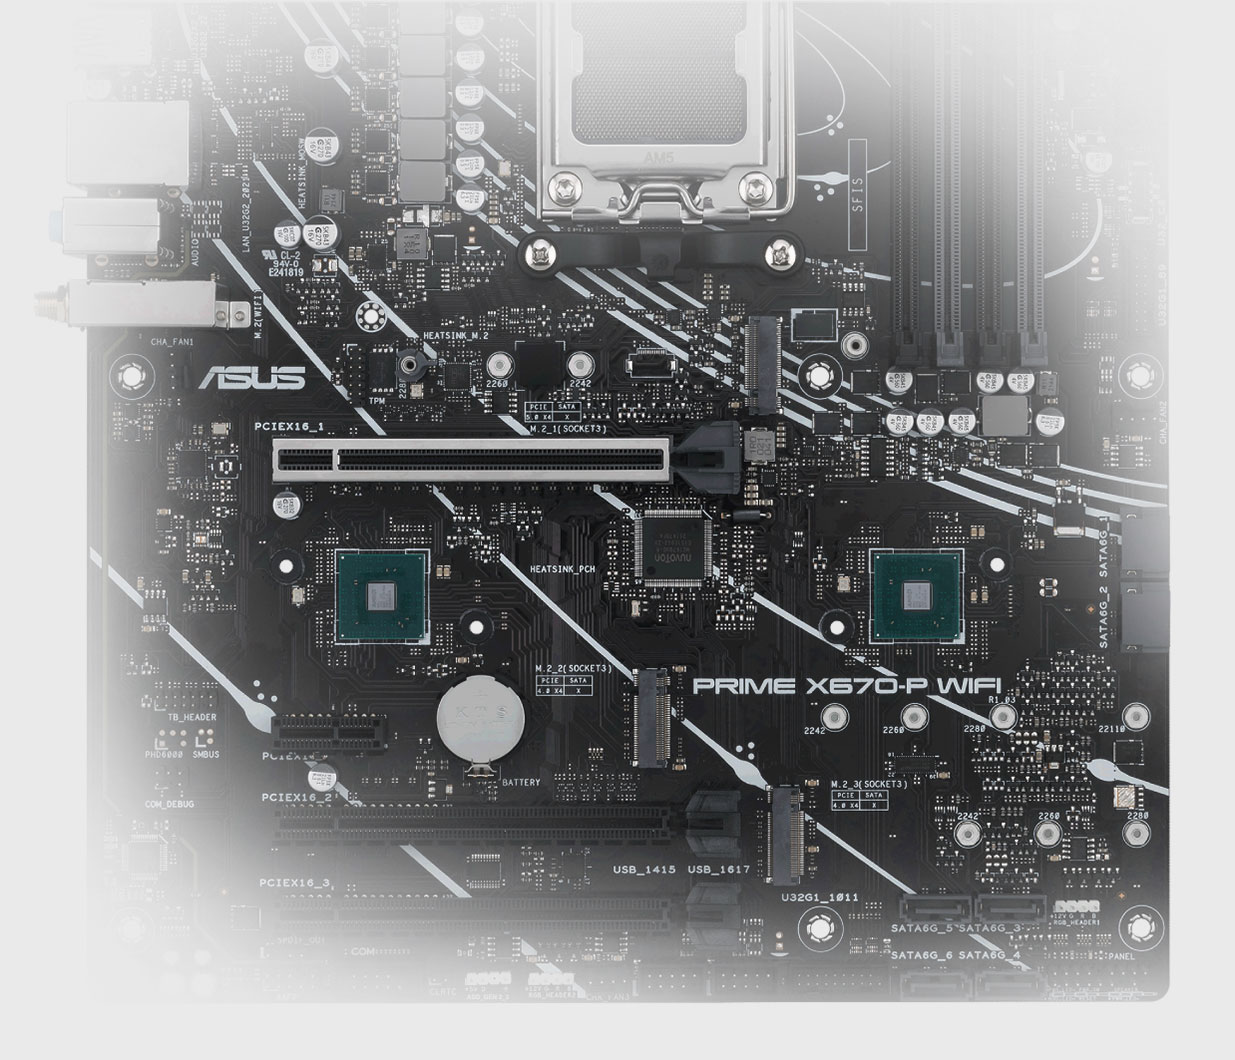 La motherboard PRIME X670-P admite una ranura PCIe 5.0 M.2.